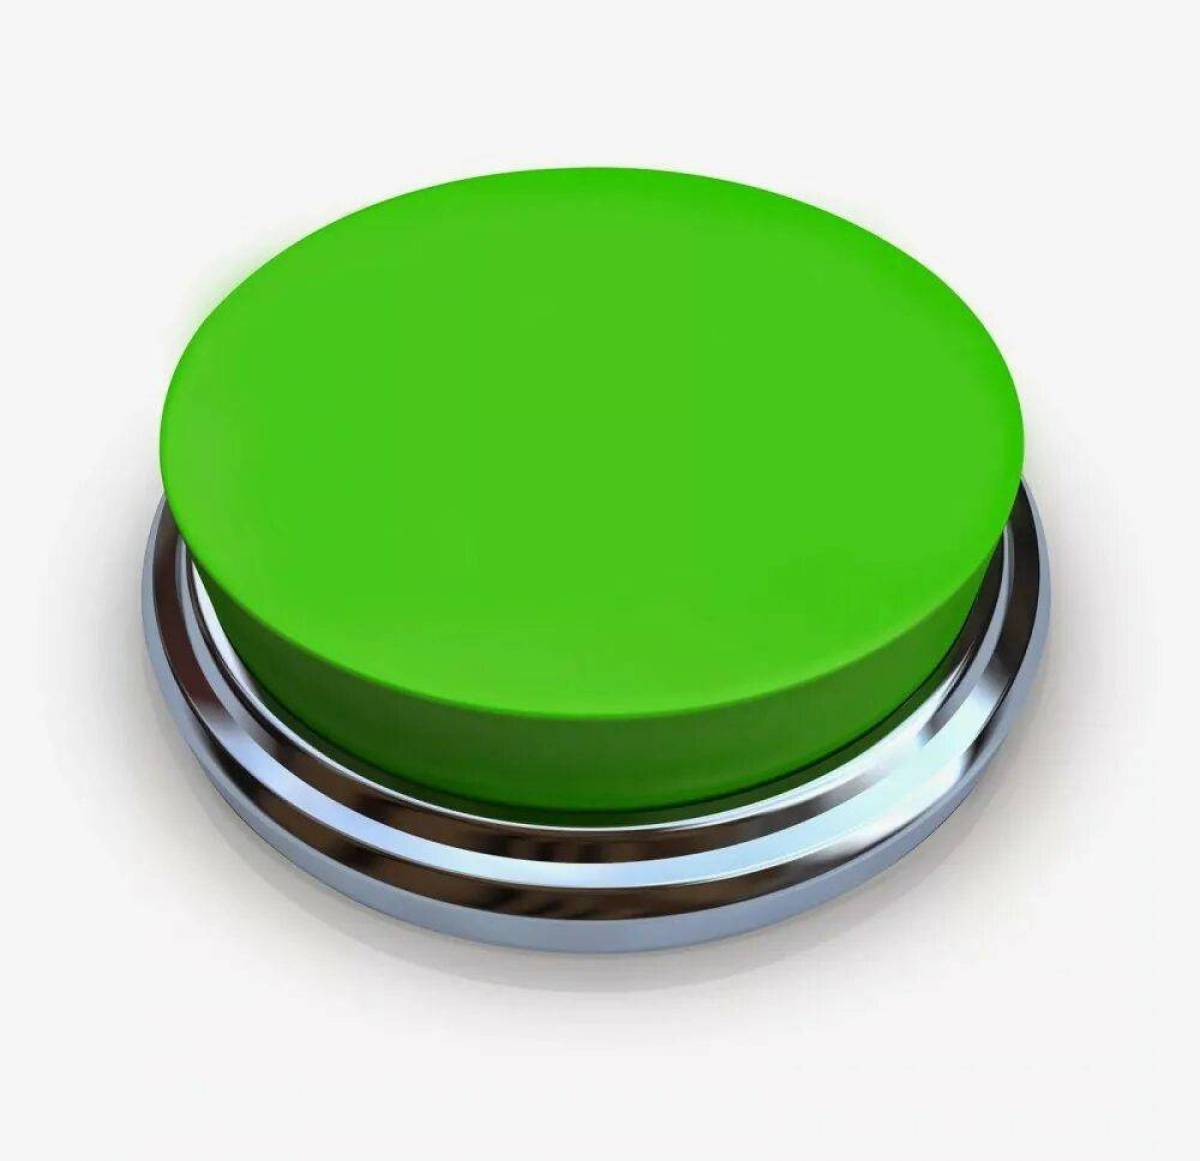 Нажми техно. Зеленая кнопка. Объемная кнопка. Кнопка на белом фоне. Салатовая кнопка.